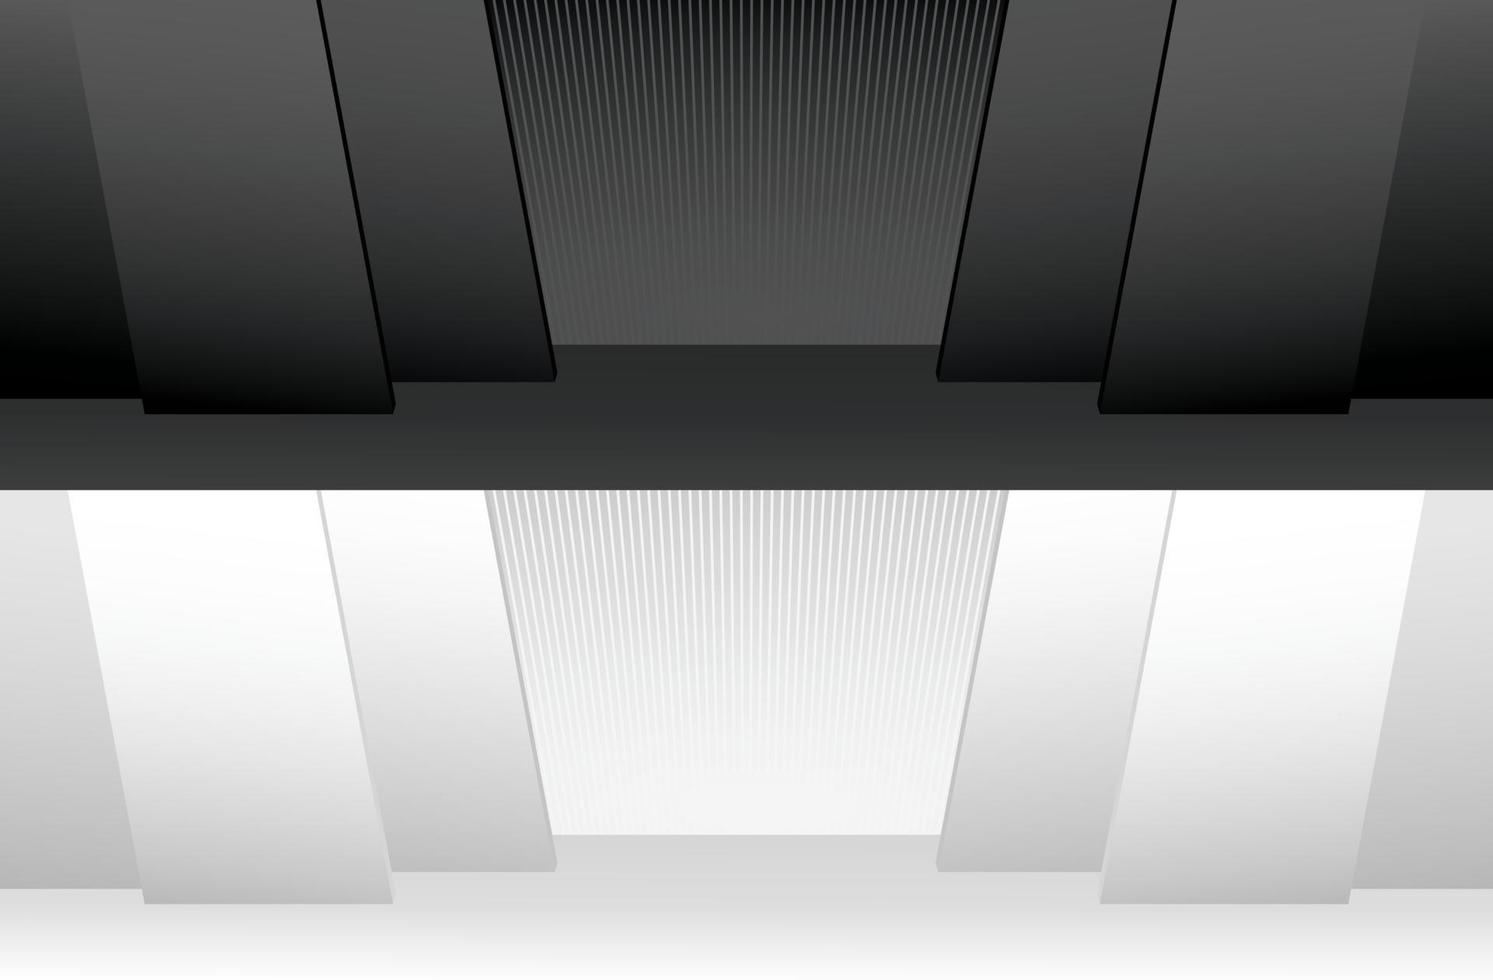 grande cena de palco moderno legal preto e branco vetor de ilustração 3d para colocar pessoas ou objetos